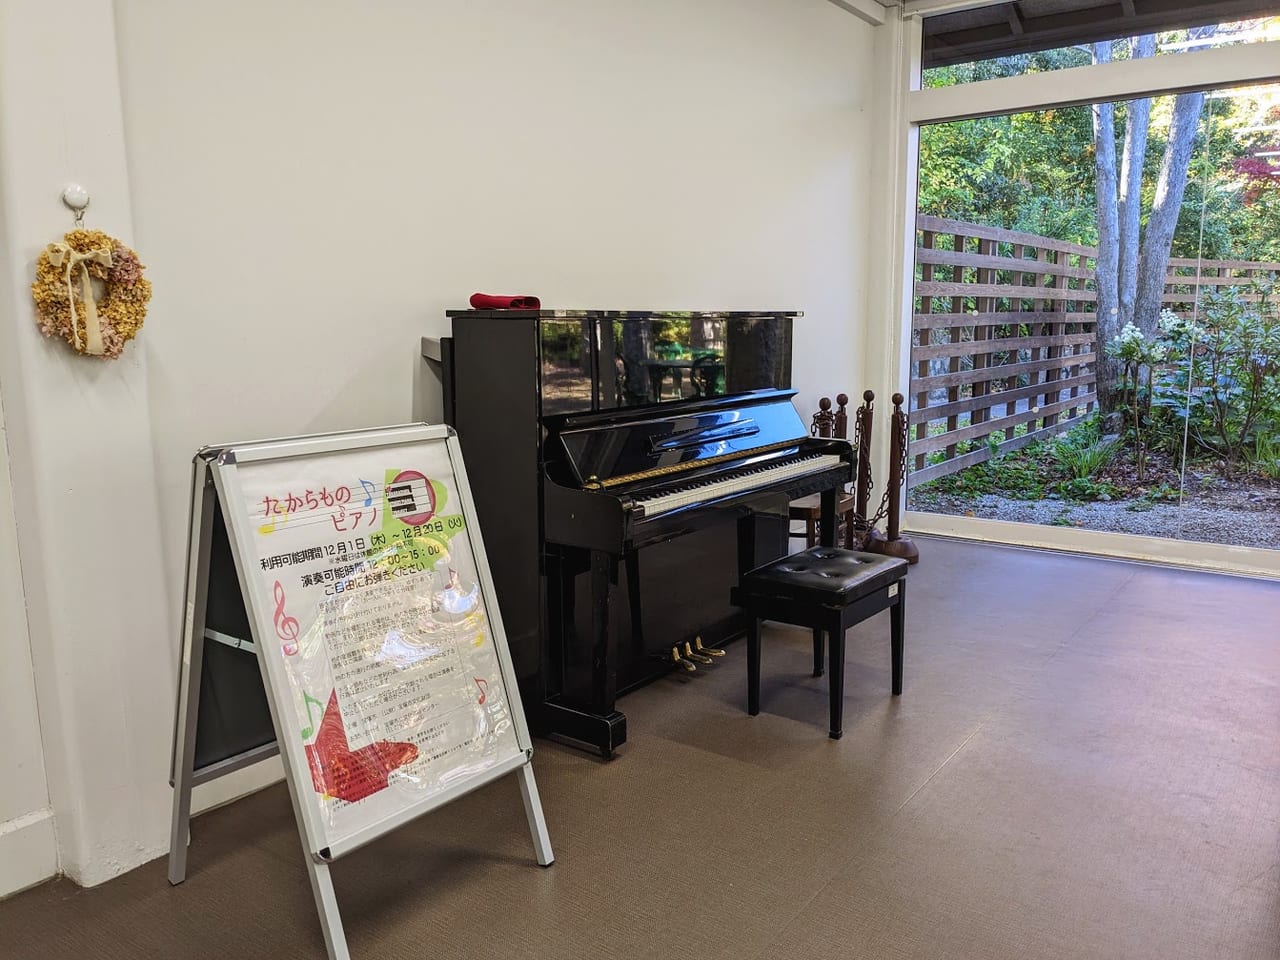 たからものピアノが文化芸術センターに設置